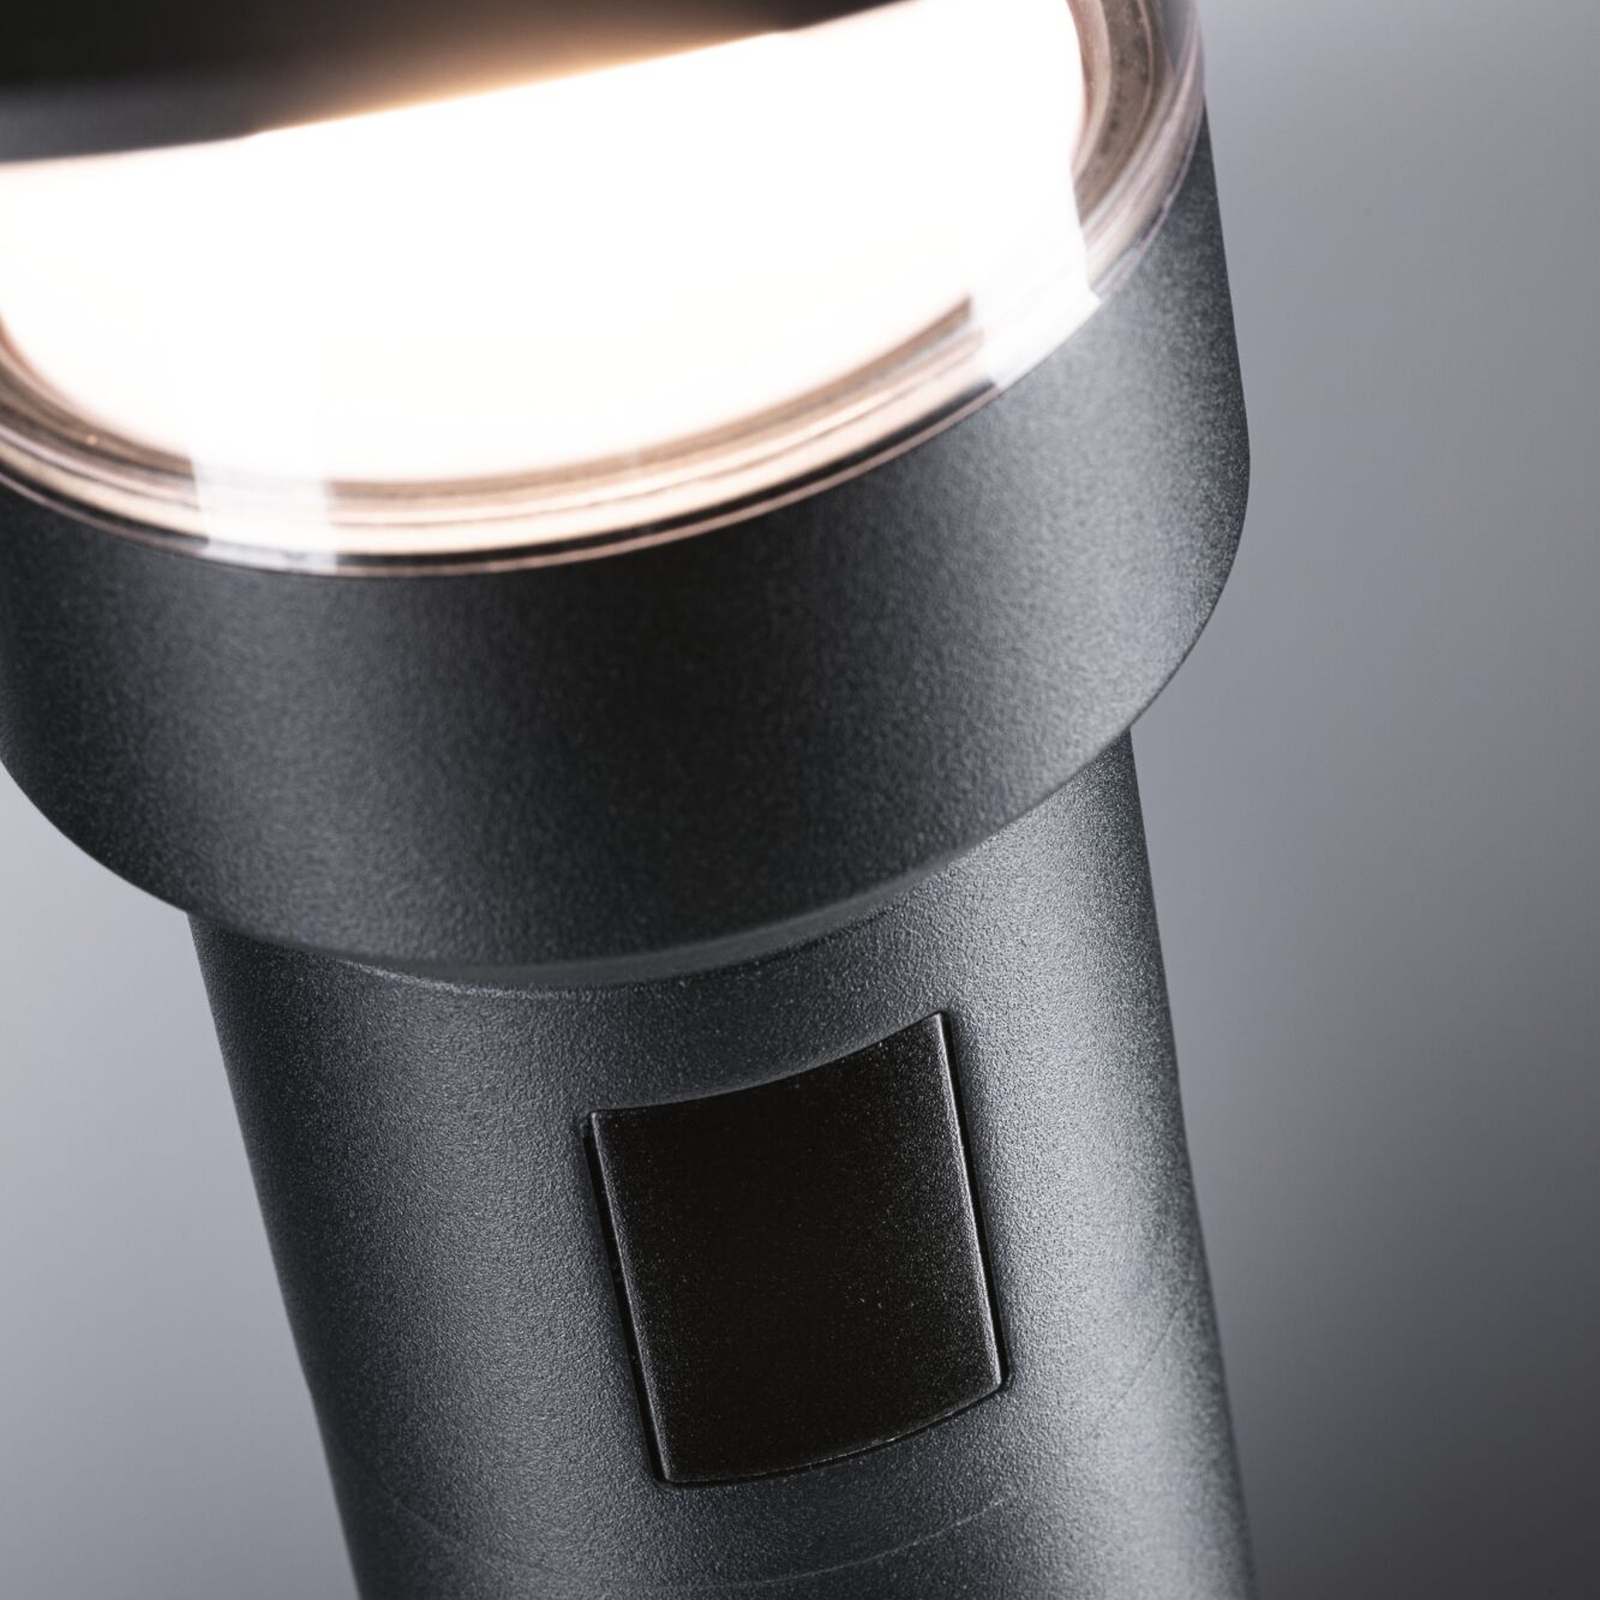 Paulmann Luz LED para caminhos de circulação Sienna, alumínio, sensor